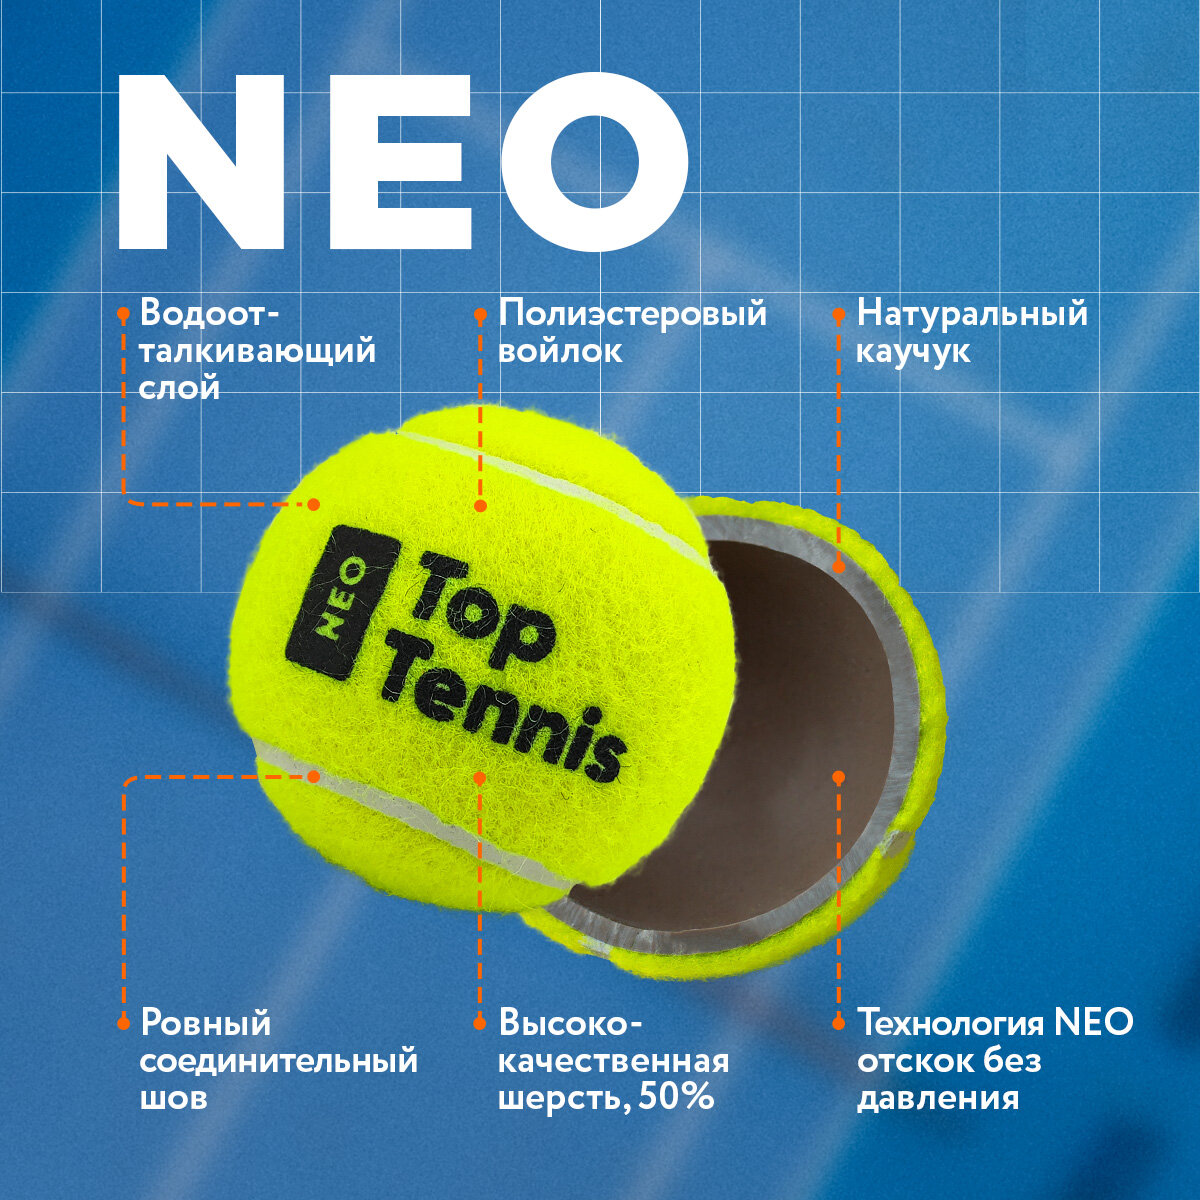 Теннисный мяч для большого тенниса профессиональный Top Tennis tbneo3 - 3 шт в в упаковке.